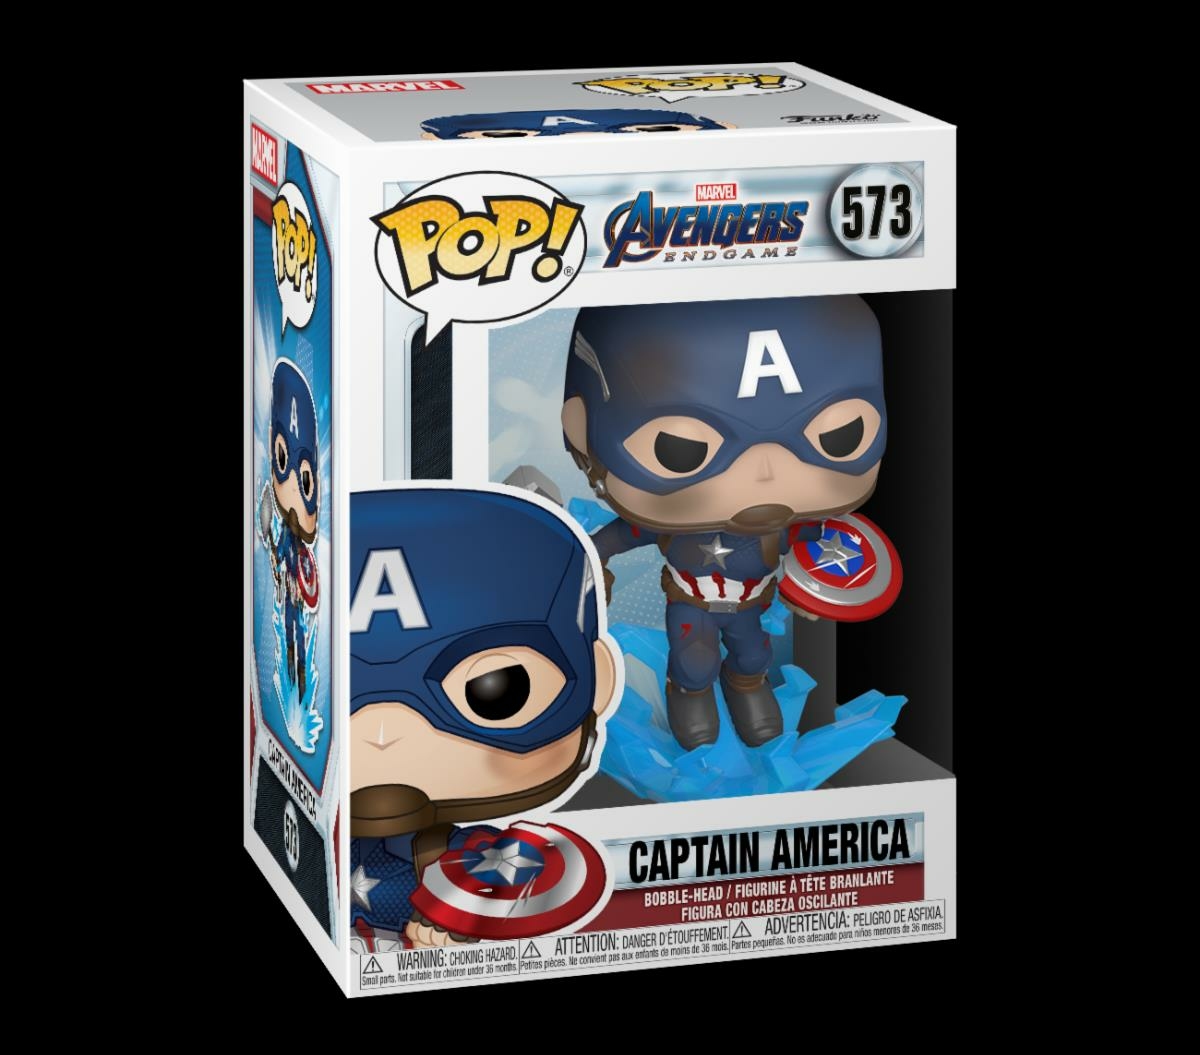 Avengers: Endgame Captain America Funko Pop (Mjolnir & Broken